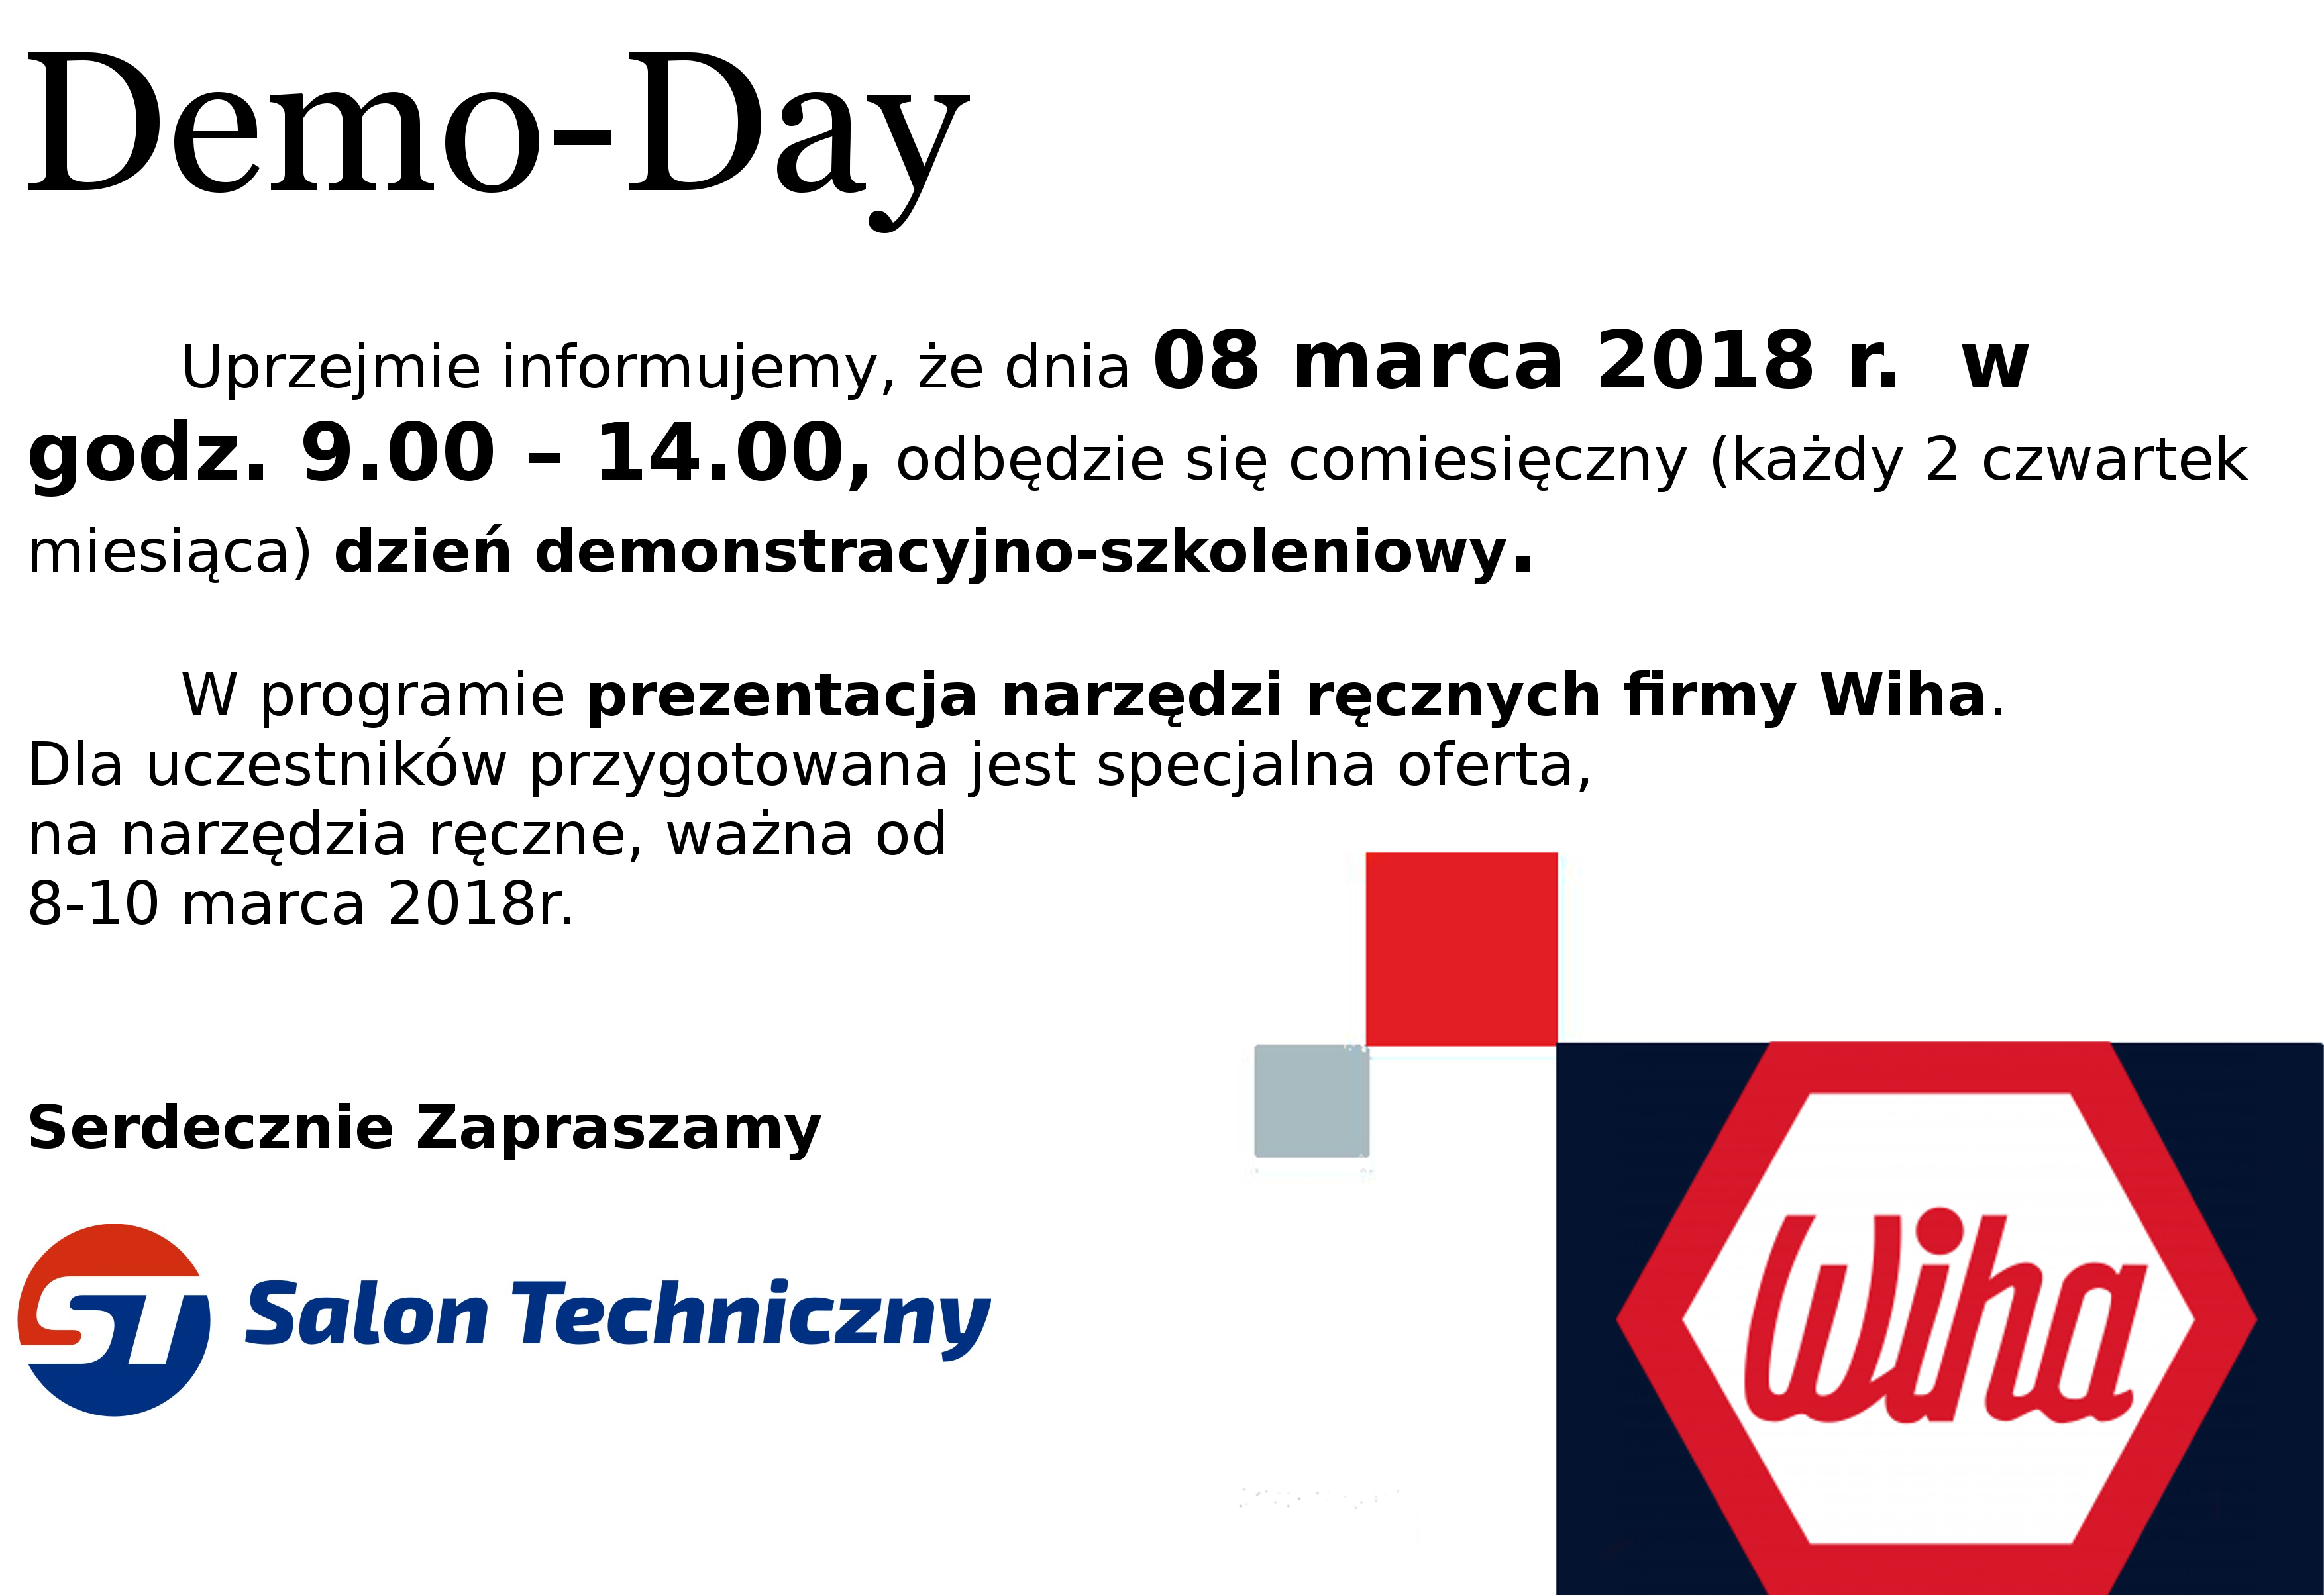 Demo-Day w Salonie Technicznym, Kraków, 08.03.2018r. godz. 9-14 